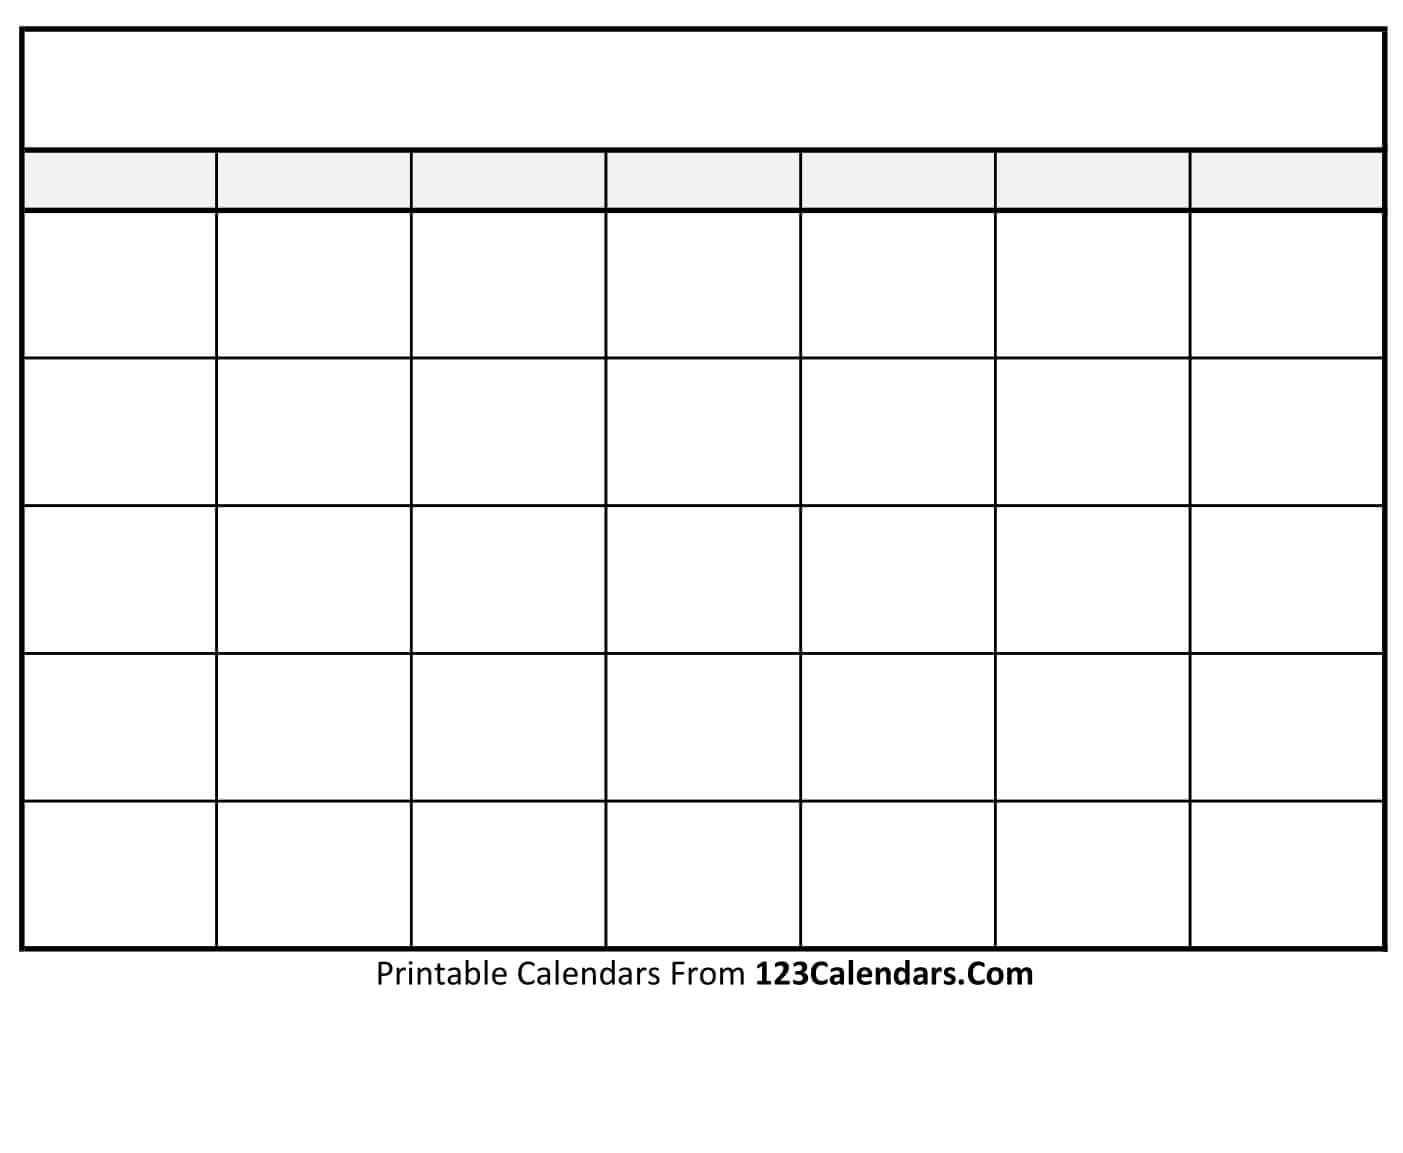 Free Printable Blank Calendar | 123Calendars.com